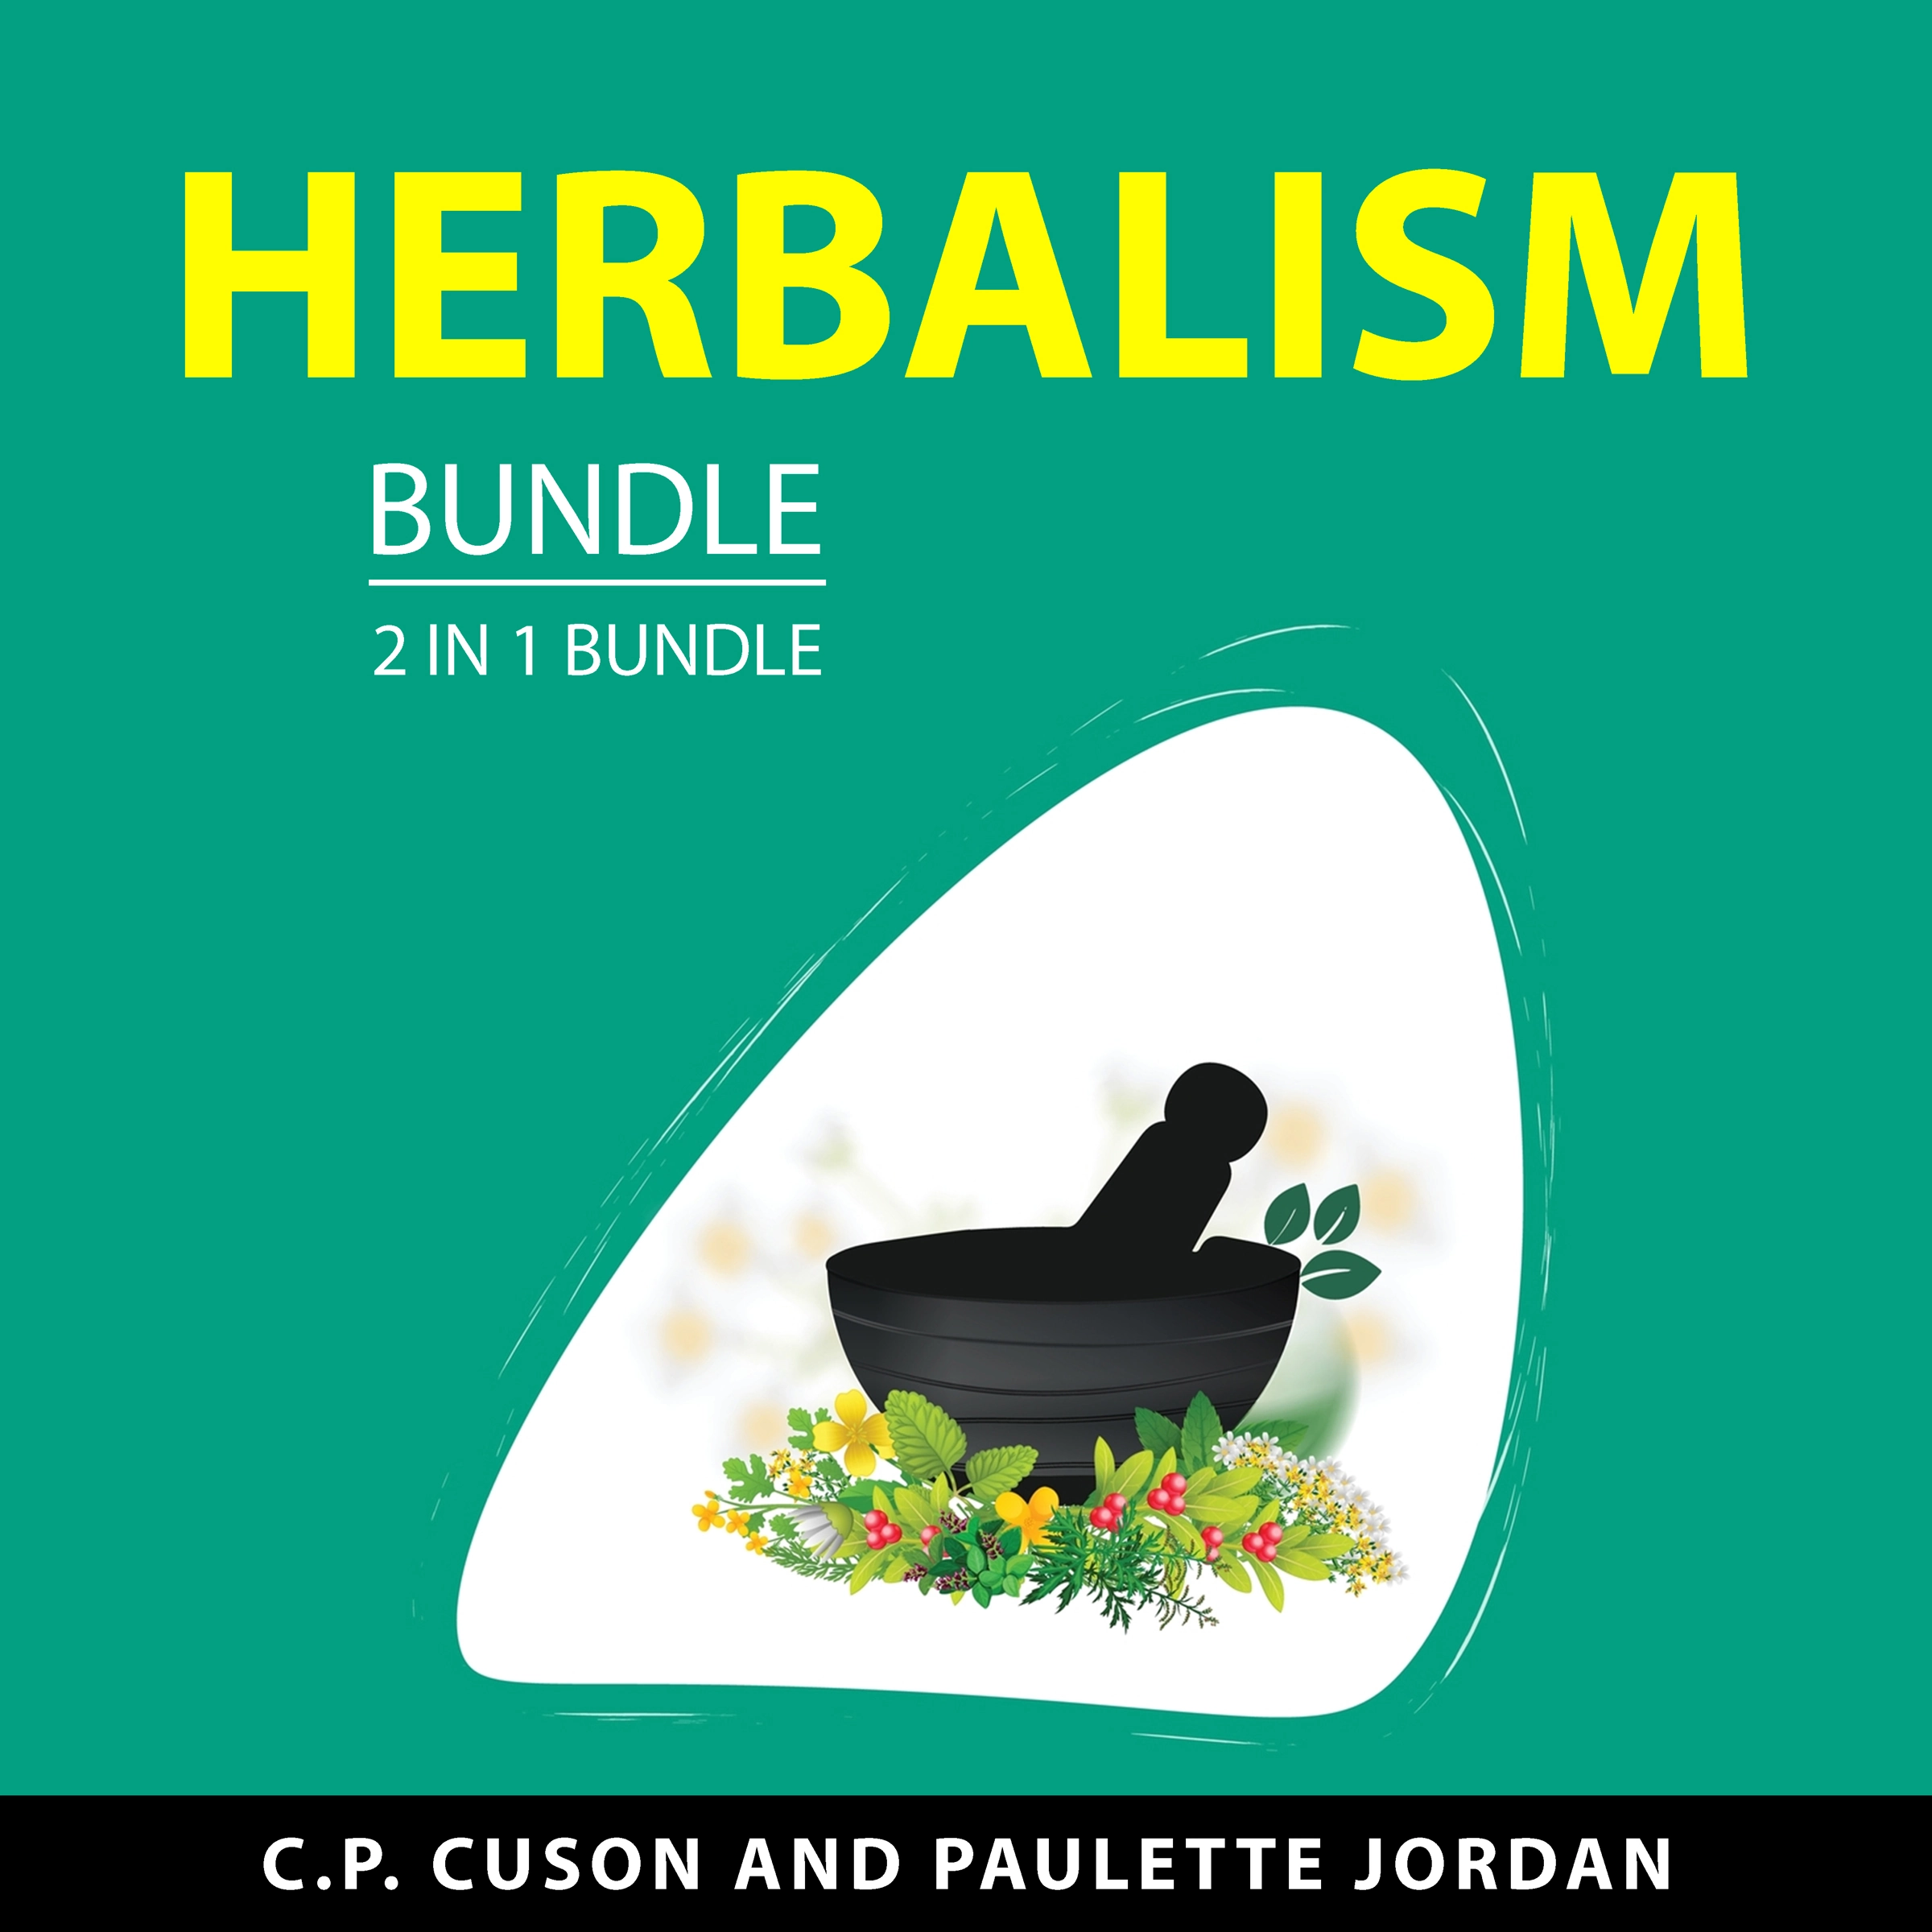 Herbalism Bundle, 2 in 1 Bundle Audiobook by Paulette Jordan